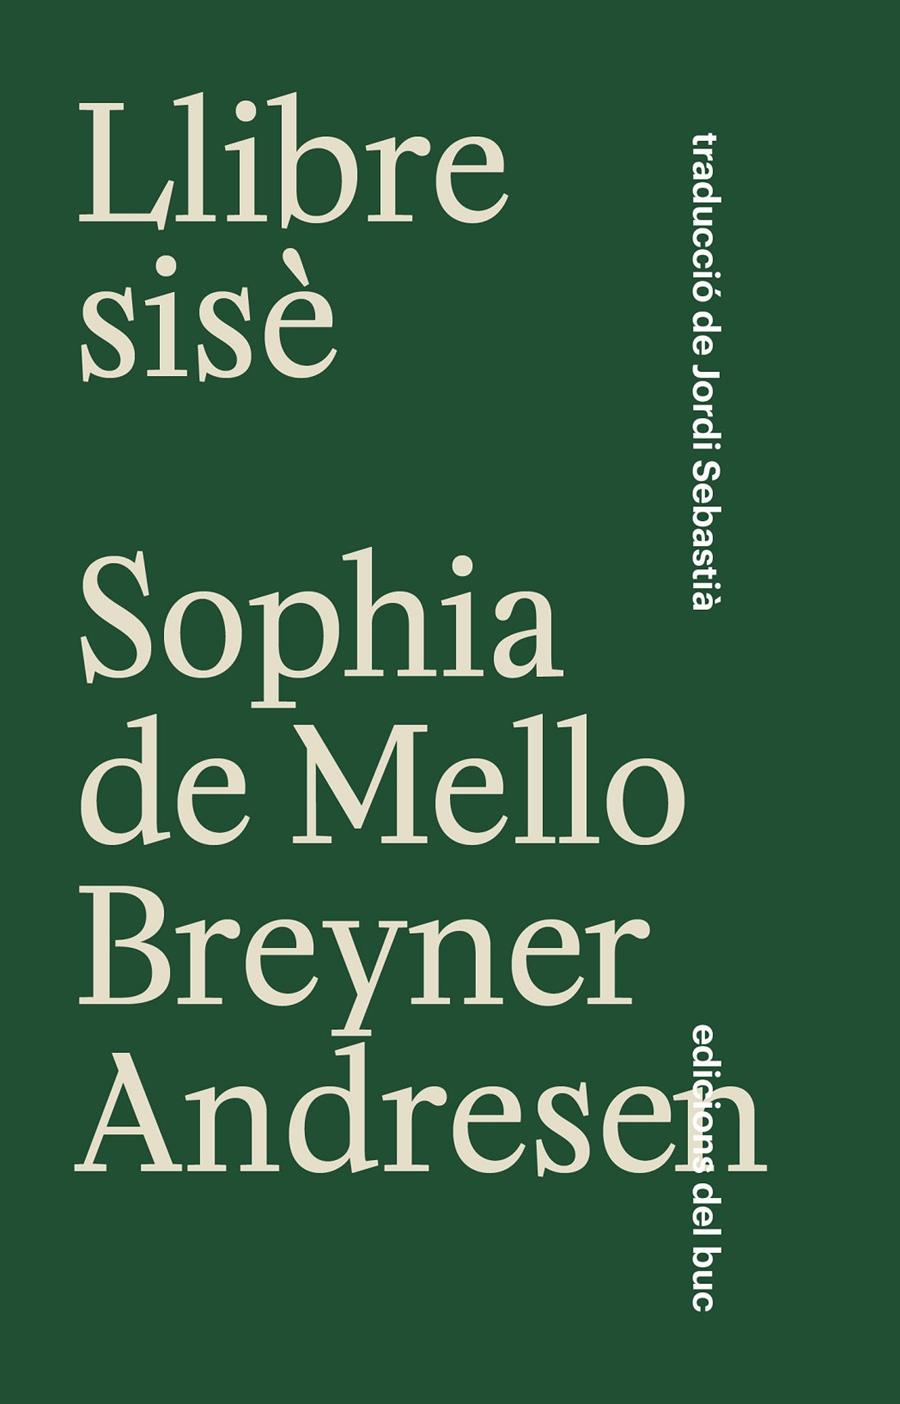 Llibre sisè [Edició bilingüe] | de Mello Breyner Andersen, Sophia | Cooperativa autogestionària